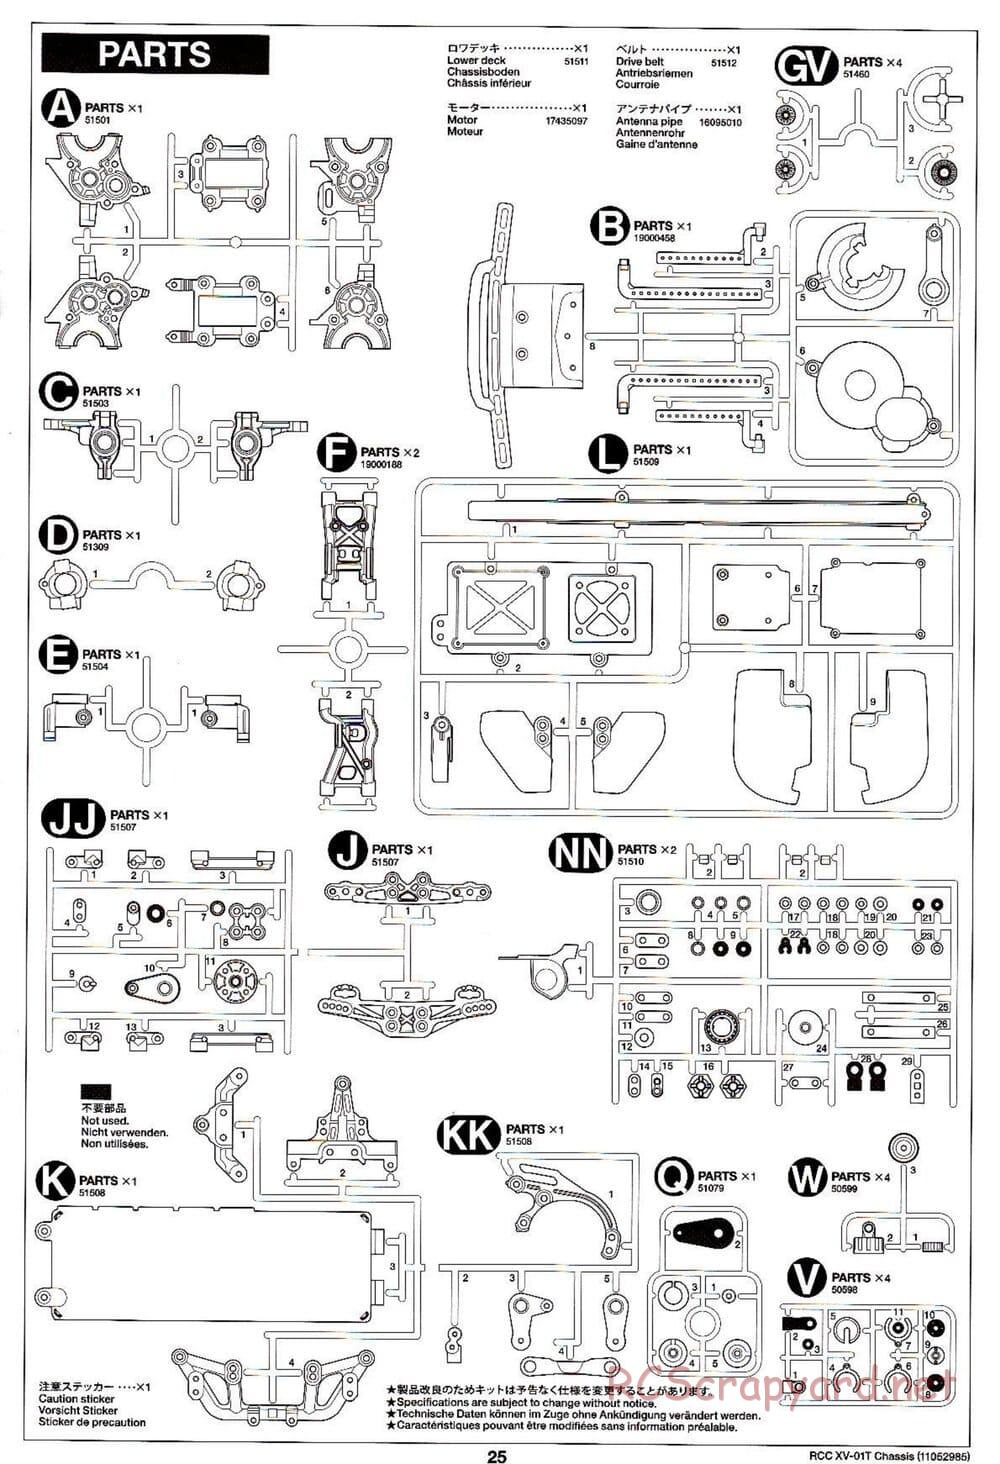 Tamiya - XV-01T Chassis - Manual - Page 25